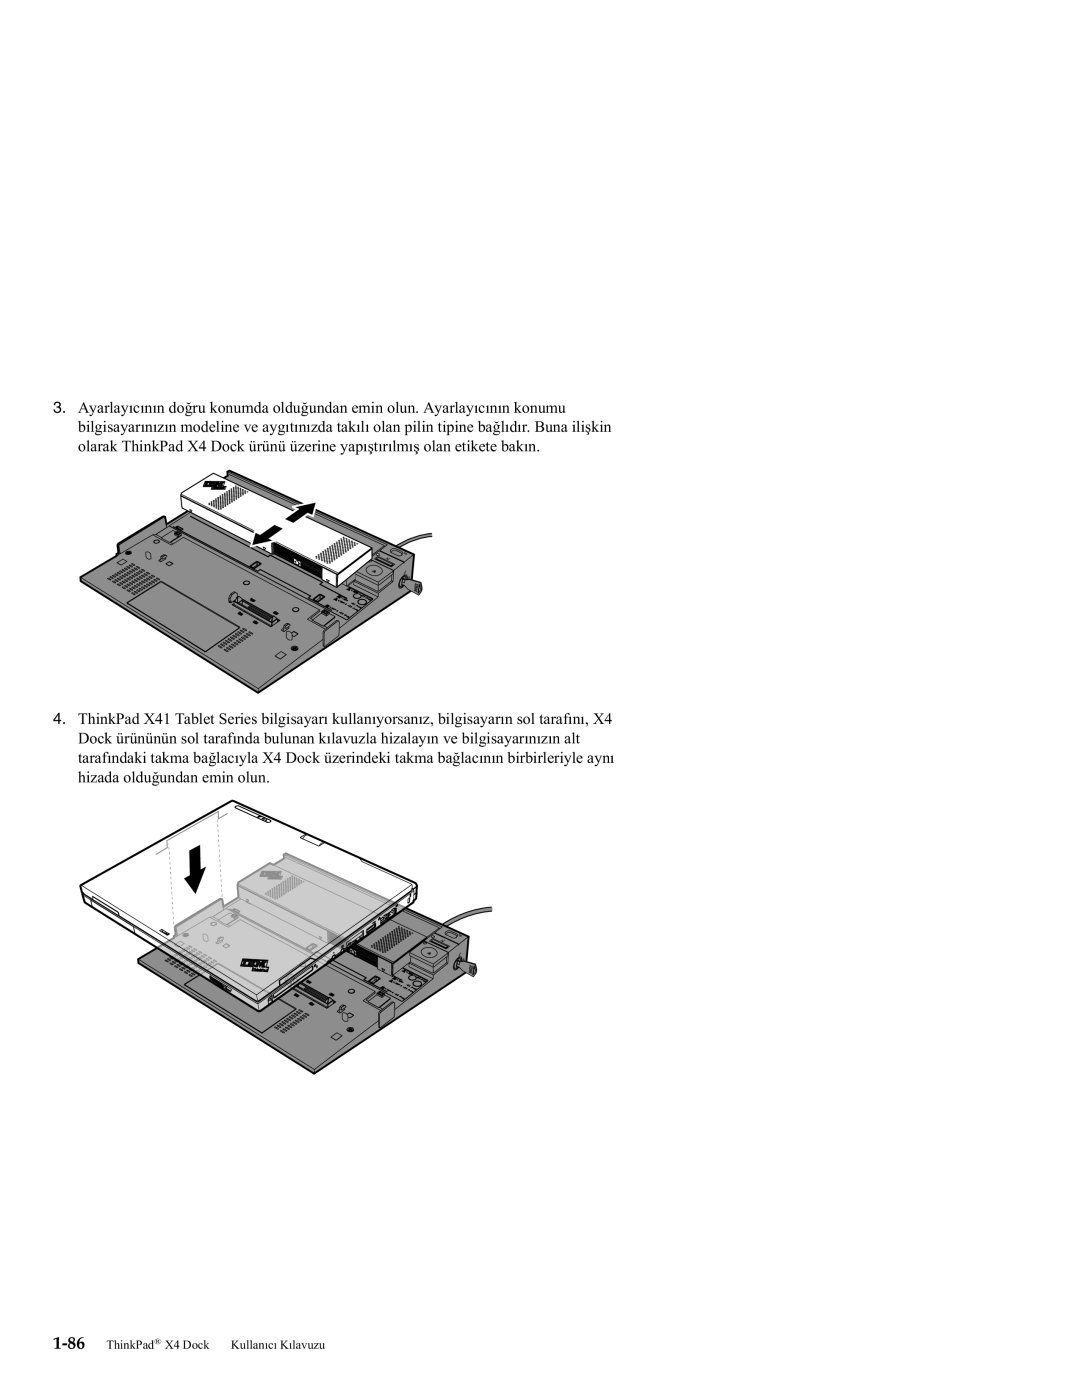 IBM manual ThinkPad X4 Dock Kullanıcı Kılavuzu 